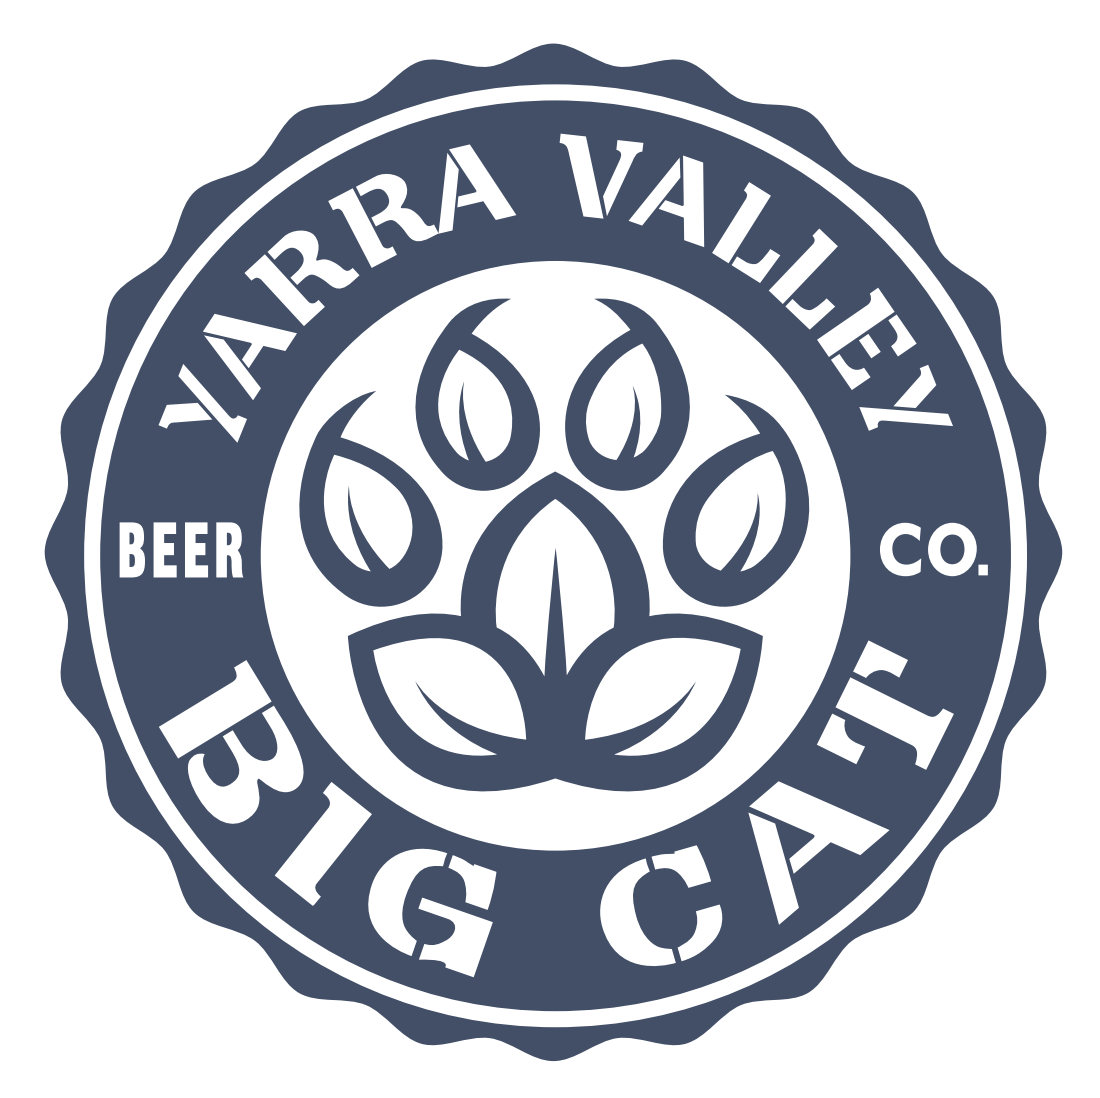 Yarra Valley Big Cat Beer Co